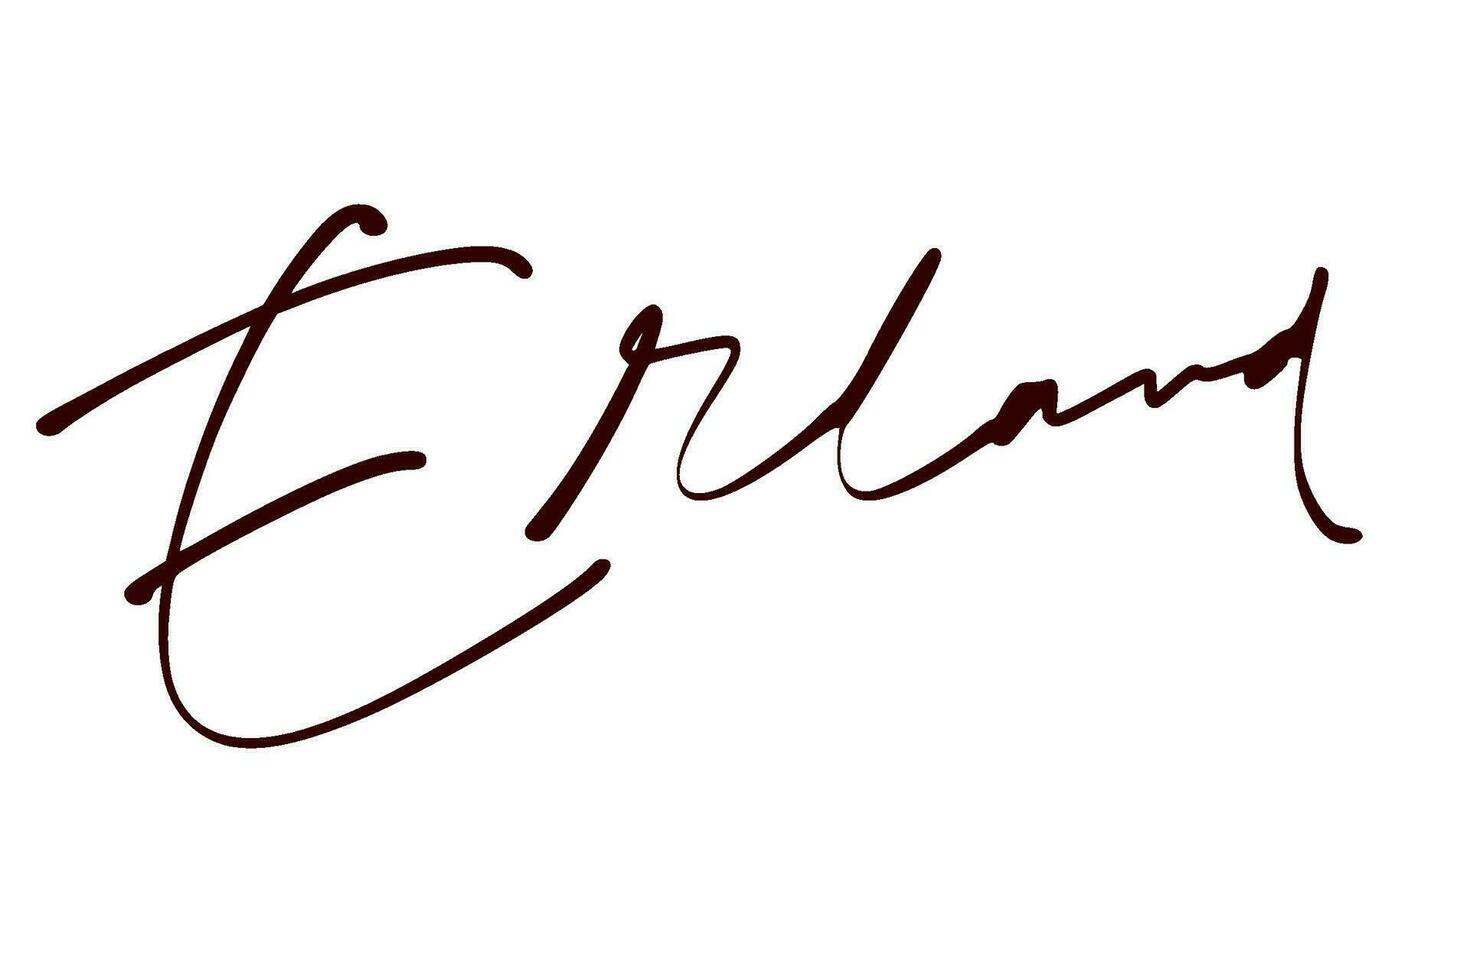 signature series E design illustration vector